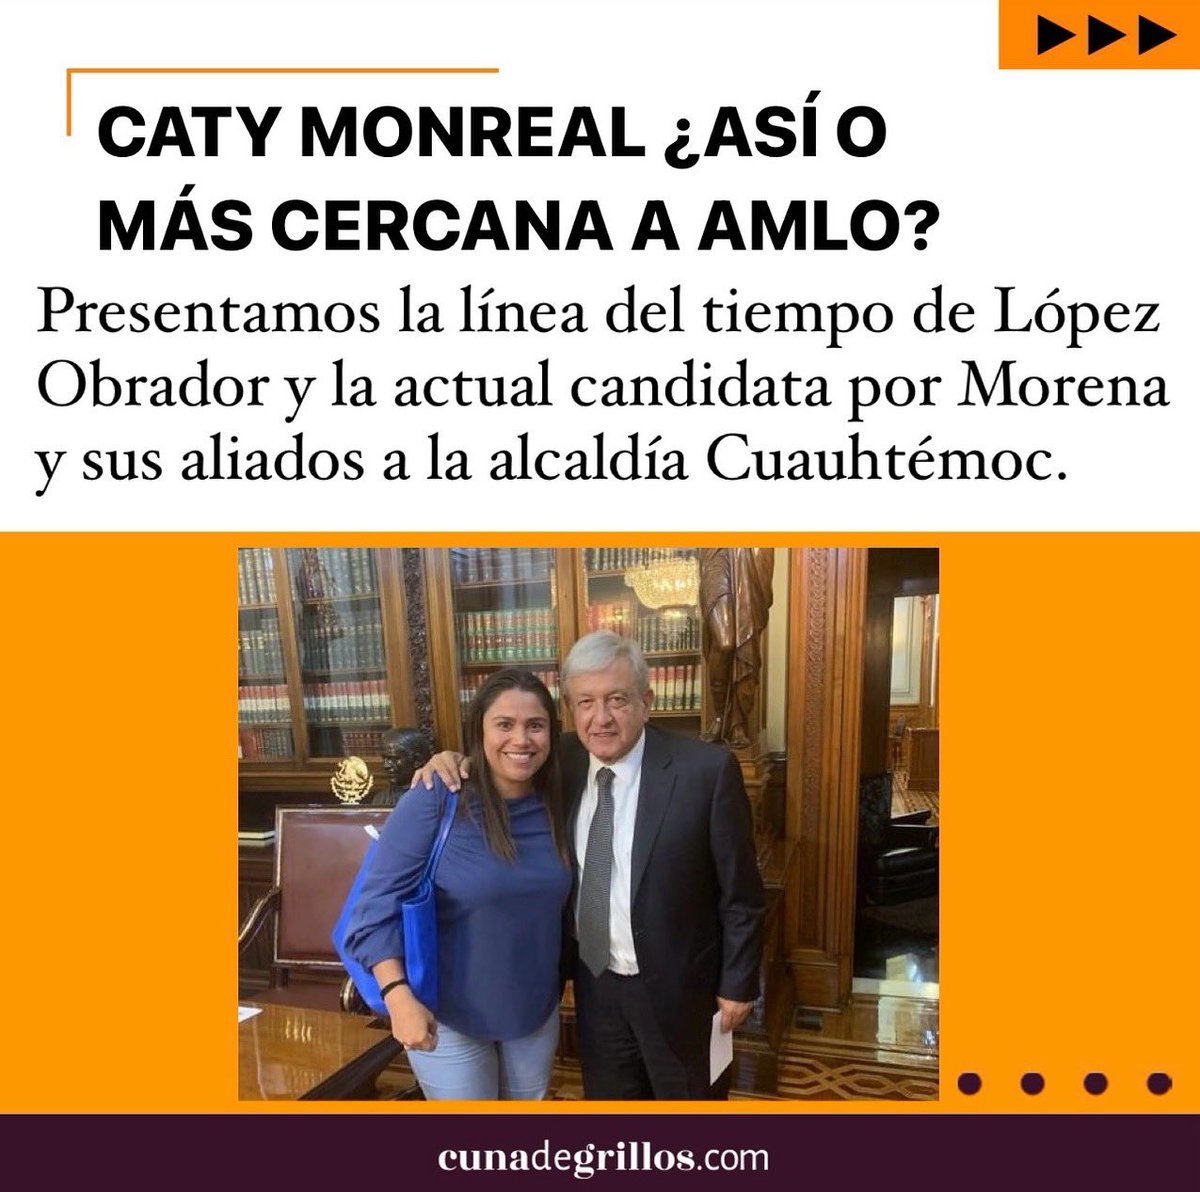 😱 CATY MONREAL ¿Así o más cercana al presidente LÓPEZ OBRADOR?

☝️ Presentamos la línea del tiempo de @lopezobrador_ y la actual candidata por Morena y sus aliados a la alcaldía Cuauhtémoc @catymonreal_. 

▶️ Aquí la fotogalería: instagram.com/p/C7jbVcaup0Q/…